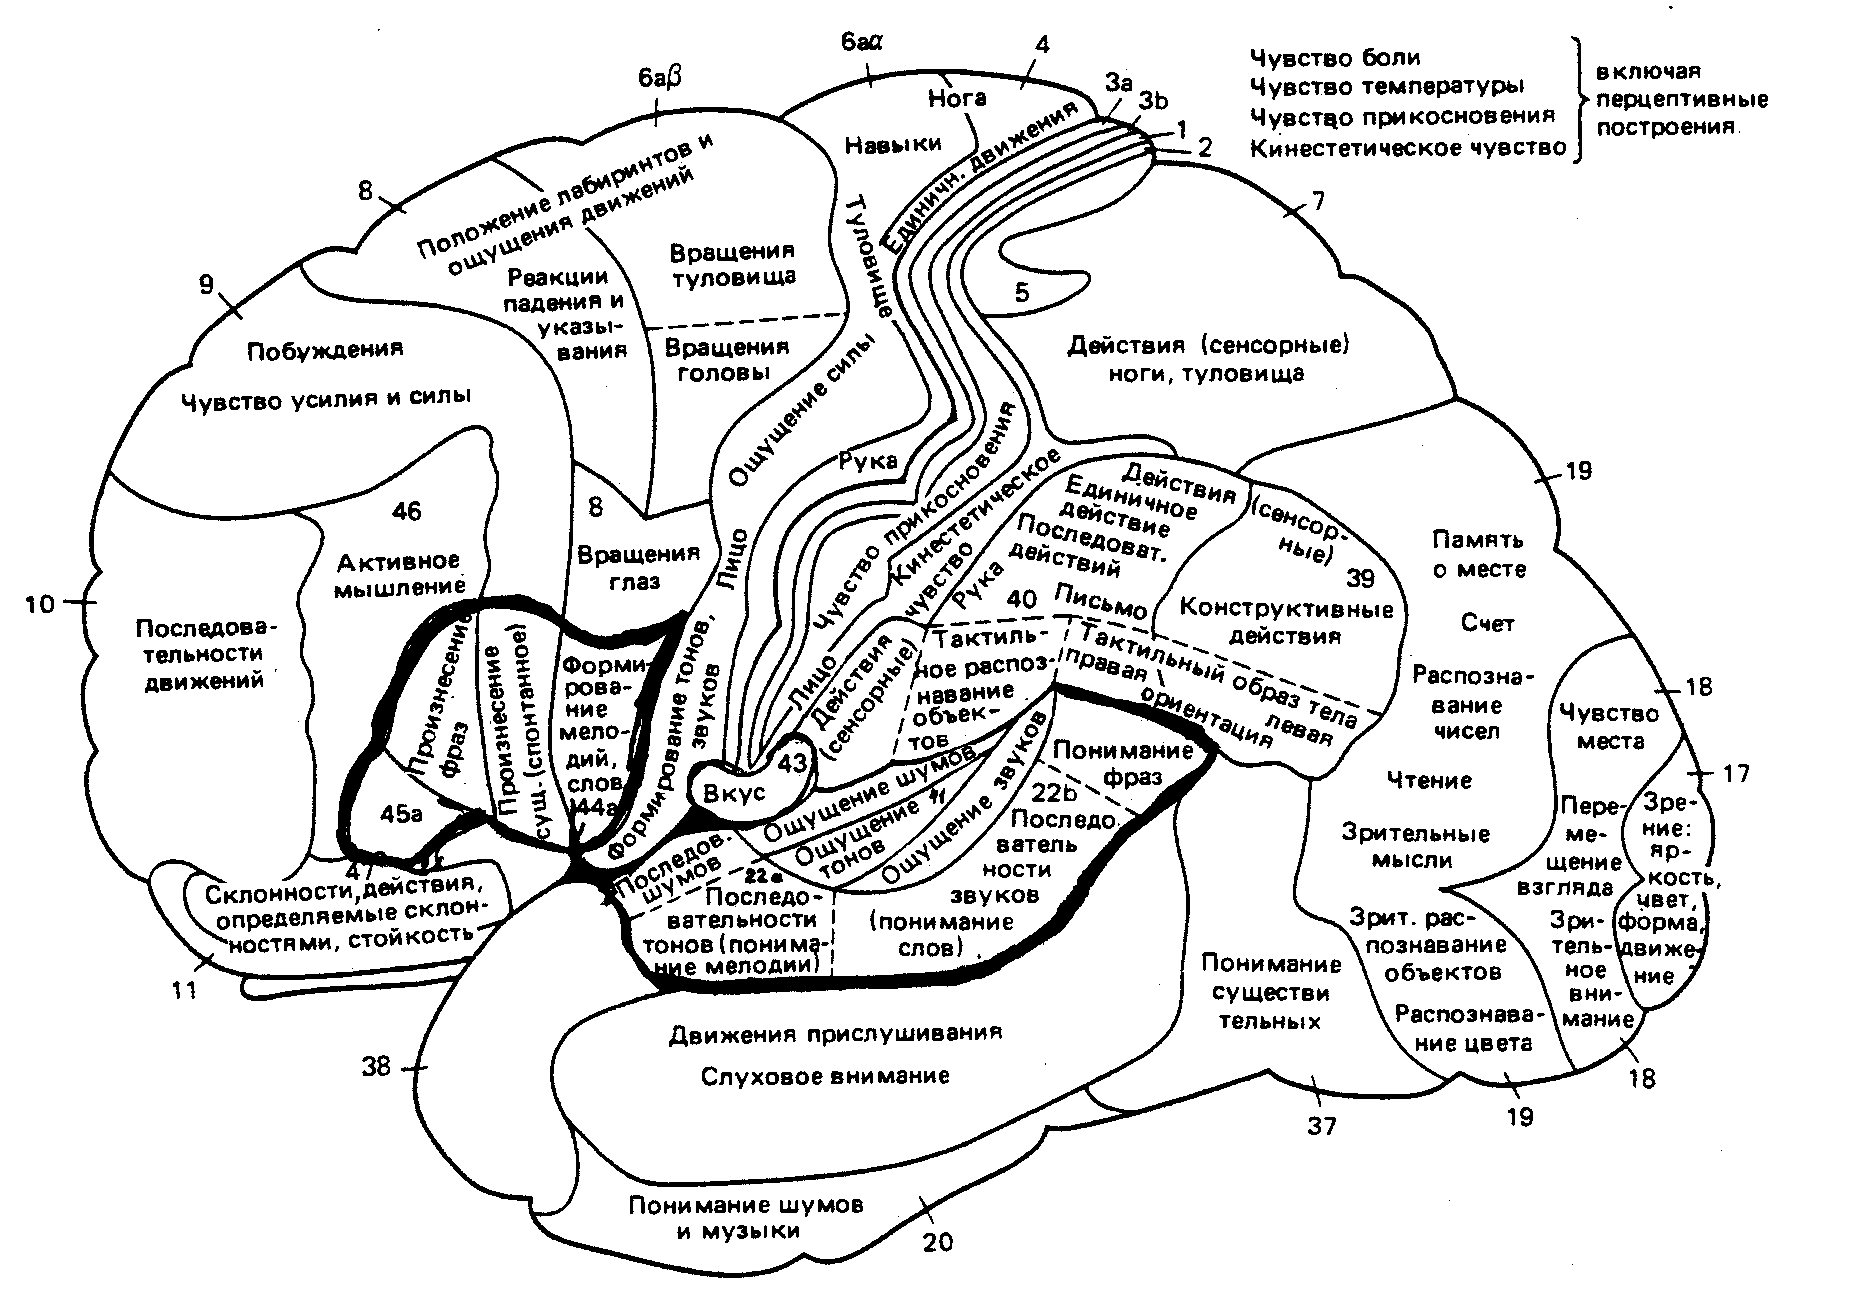 Основные зоны мозга. Карта полушарий мозга поля по Бродману. Карта локализации функций в коре головного мозга по Бродману. Карта полей головного мозга по Бродману. Карта цитоархитектонических полей коры головного мозга Бродмана.